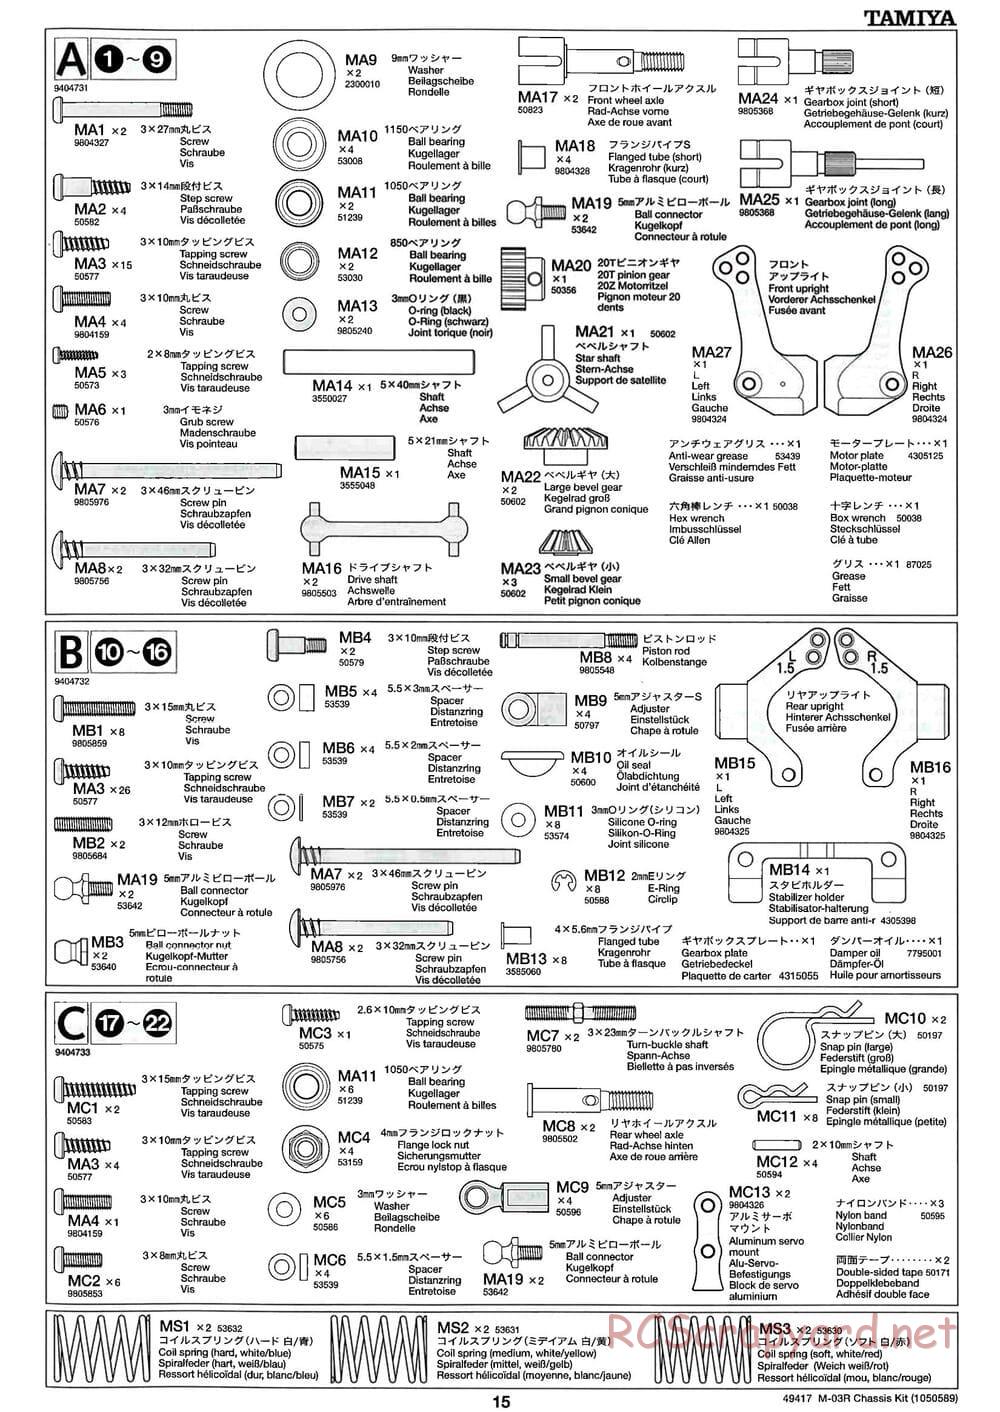 Tamiya - M-03R Chassis - Manual - Page 15